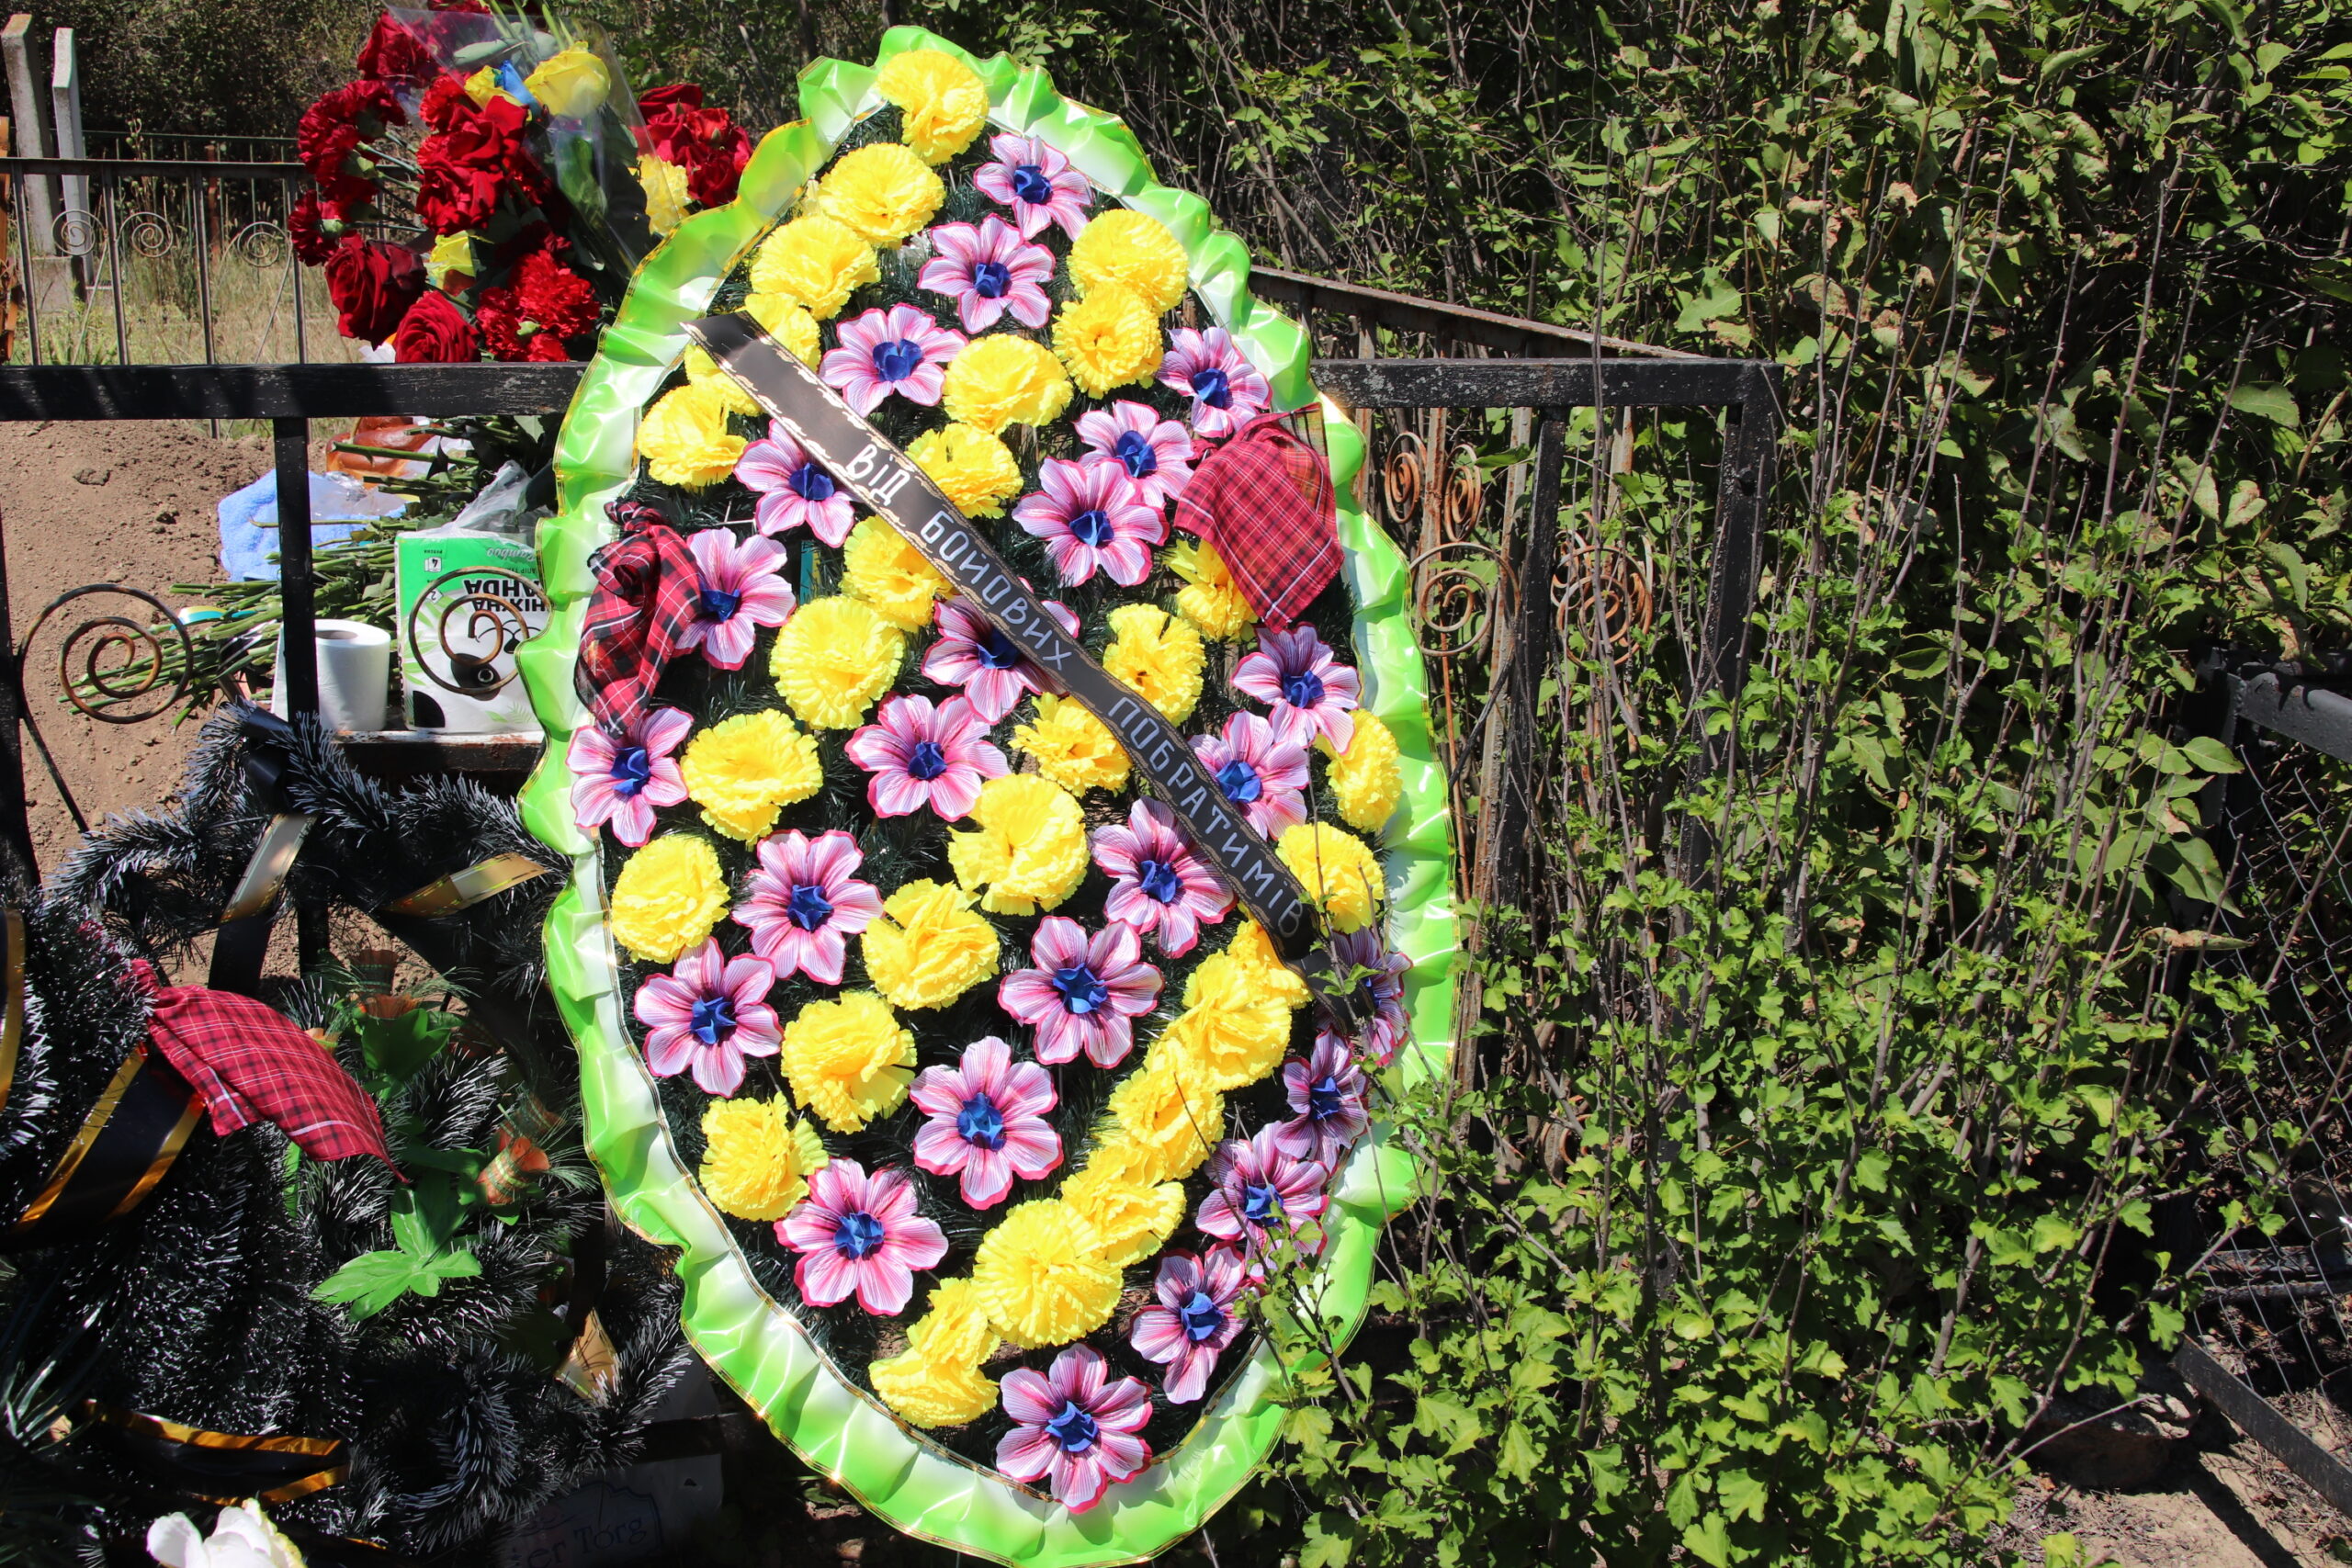 Багато квітів, сліз та болю: сьогодні Болград попрощався з морським піхотинцем Григорієм Лазарєвим